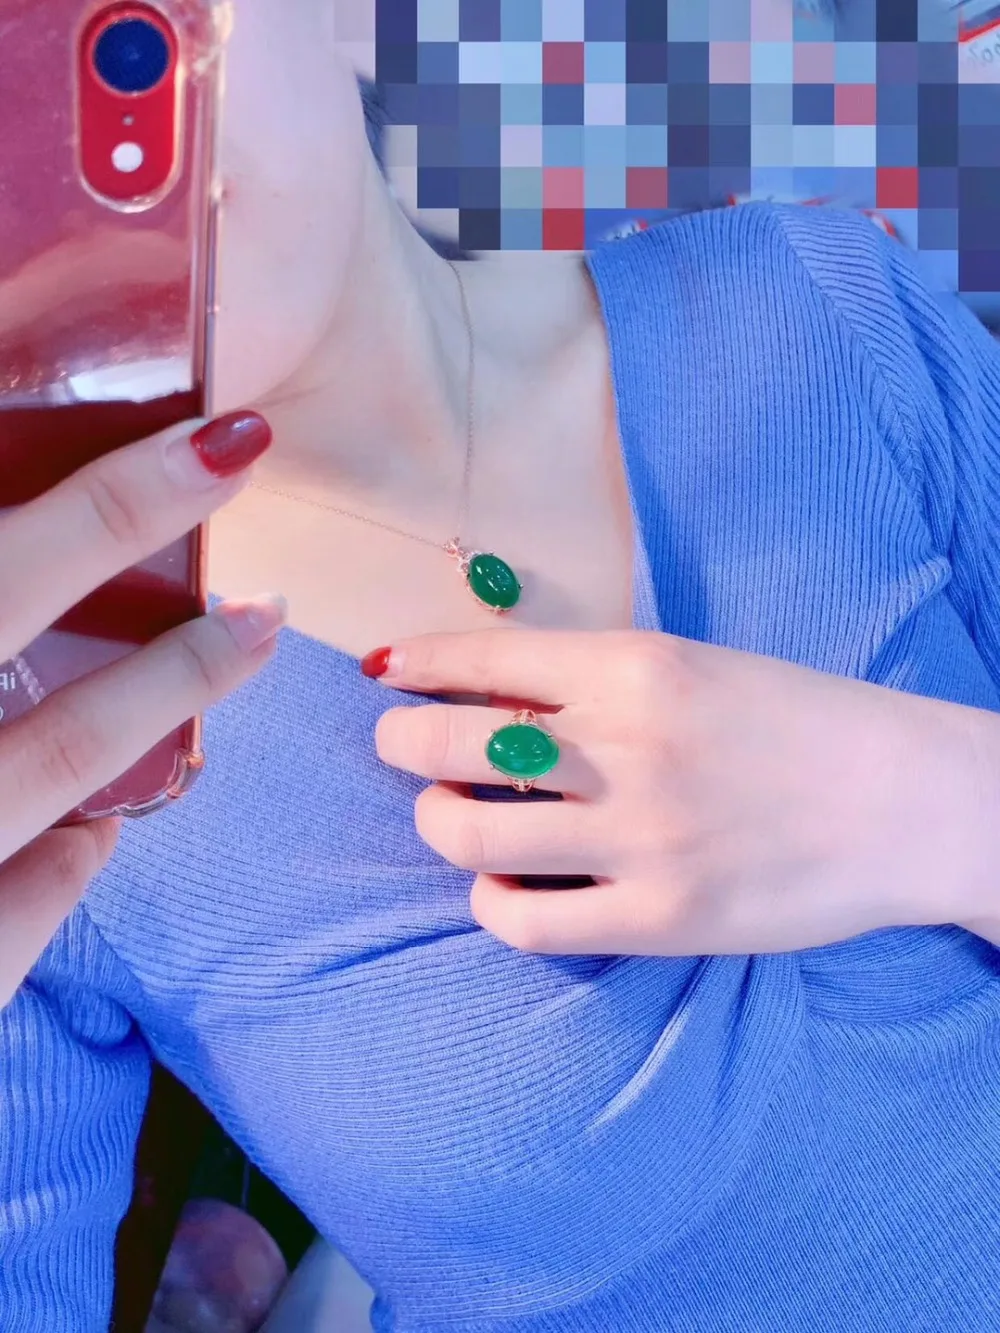 KJJEAXCMY бутик ювелирных изделий 925 с инкрустацией, из чистого серебра Природный зеленый халцедон кольцо женское ожерелье с подвеской модели поддерживают Тести